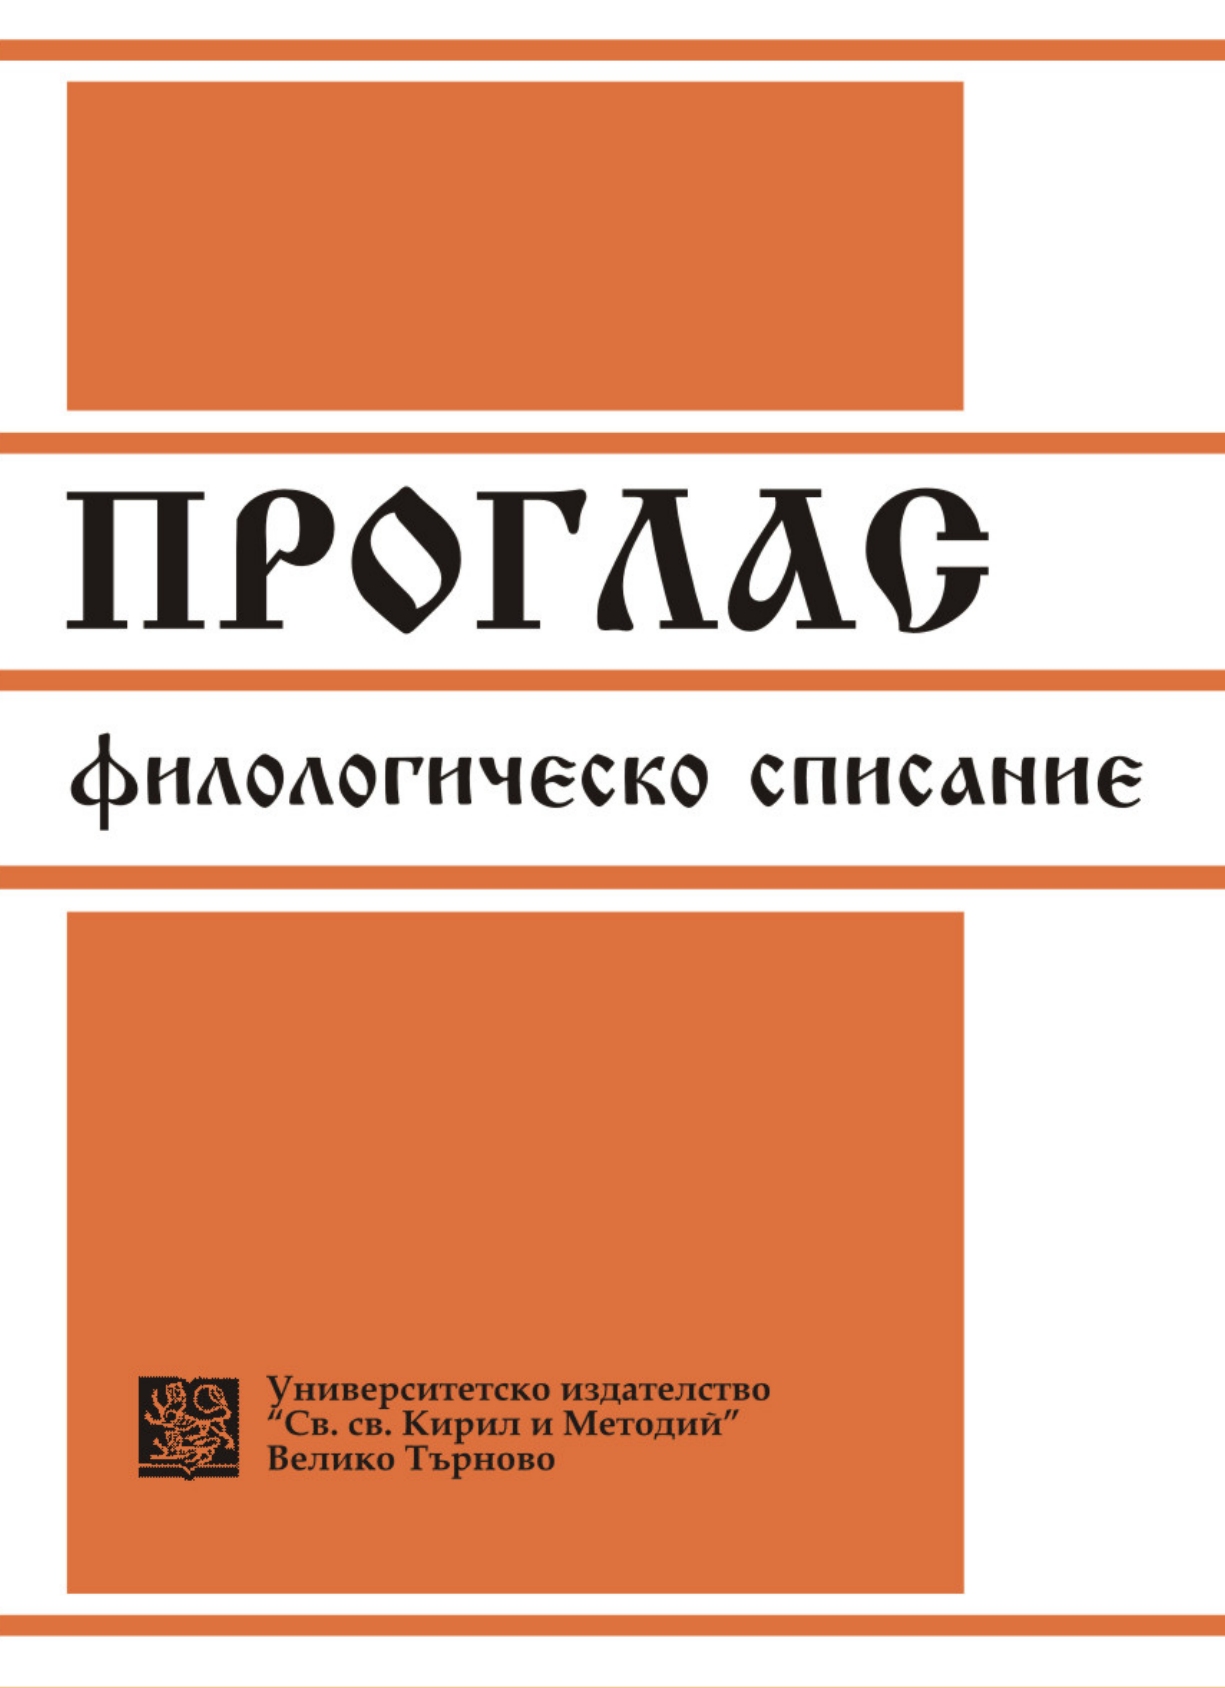 Wojciech Gałązka – a Specialist in Bulgarian Studies Cover Image